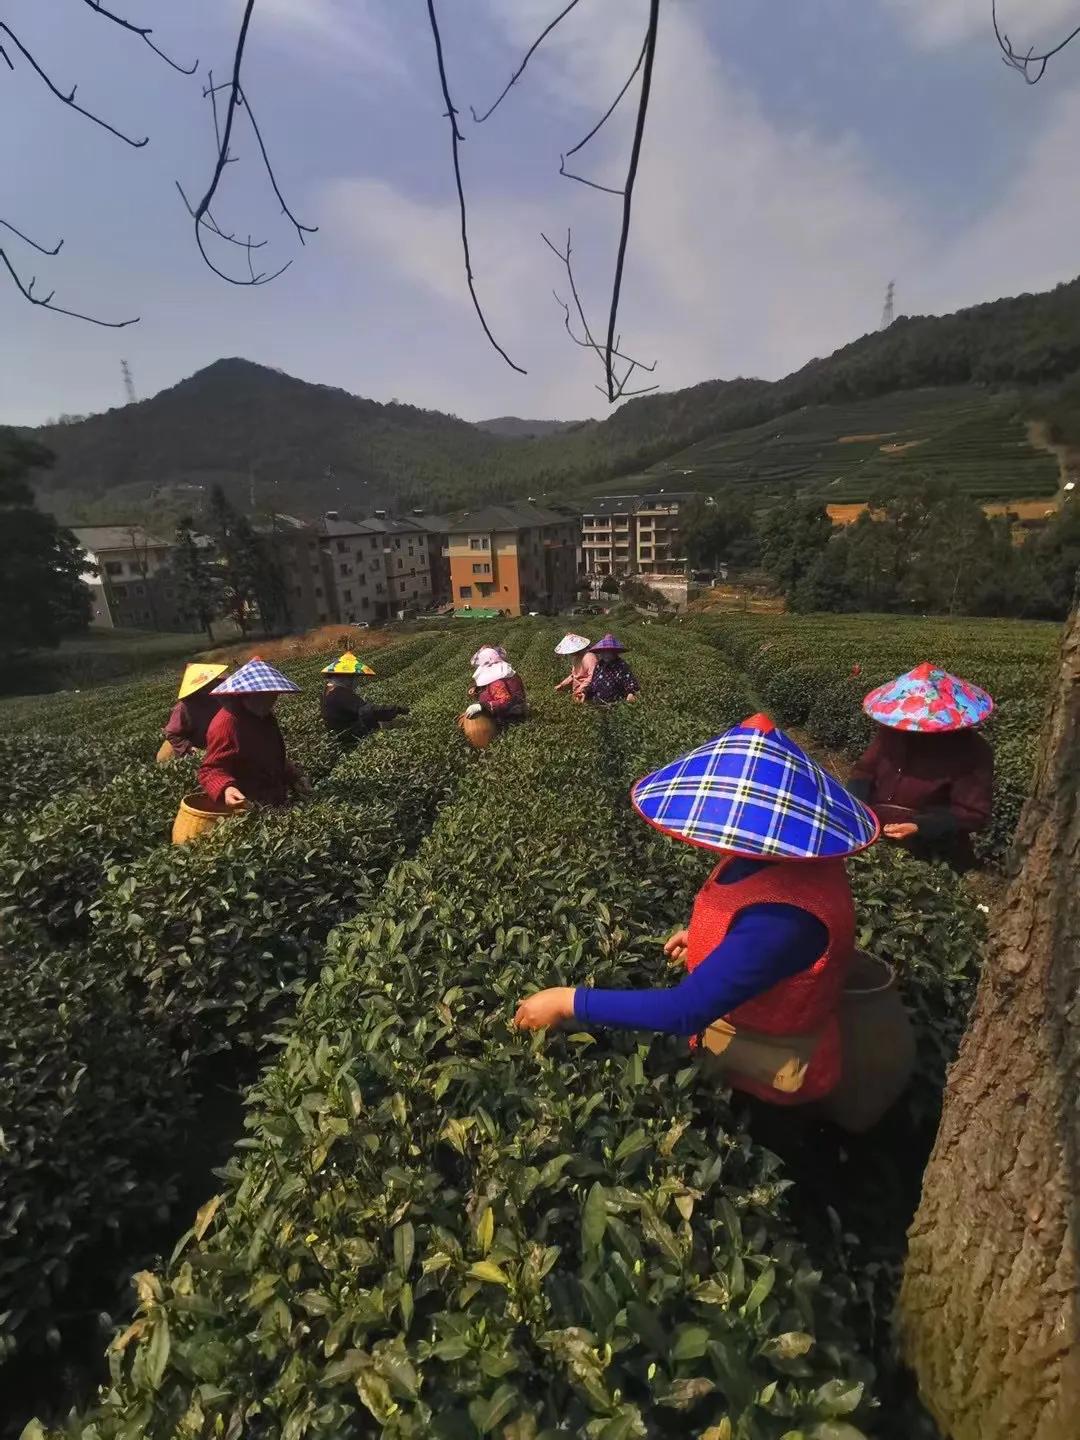 淡茶养生：西湖龙井茶（绿茶）、斯宅高山茶（绿茶、红茶）